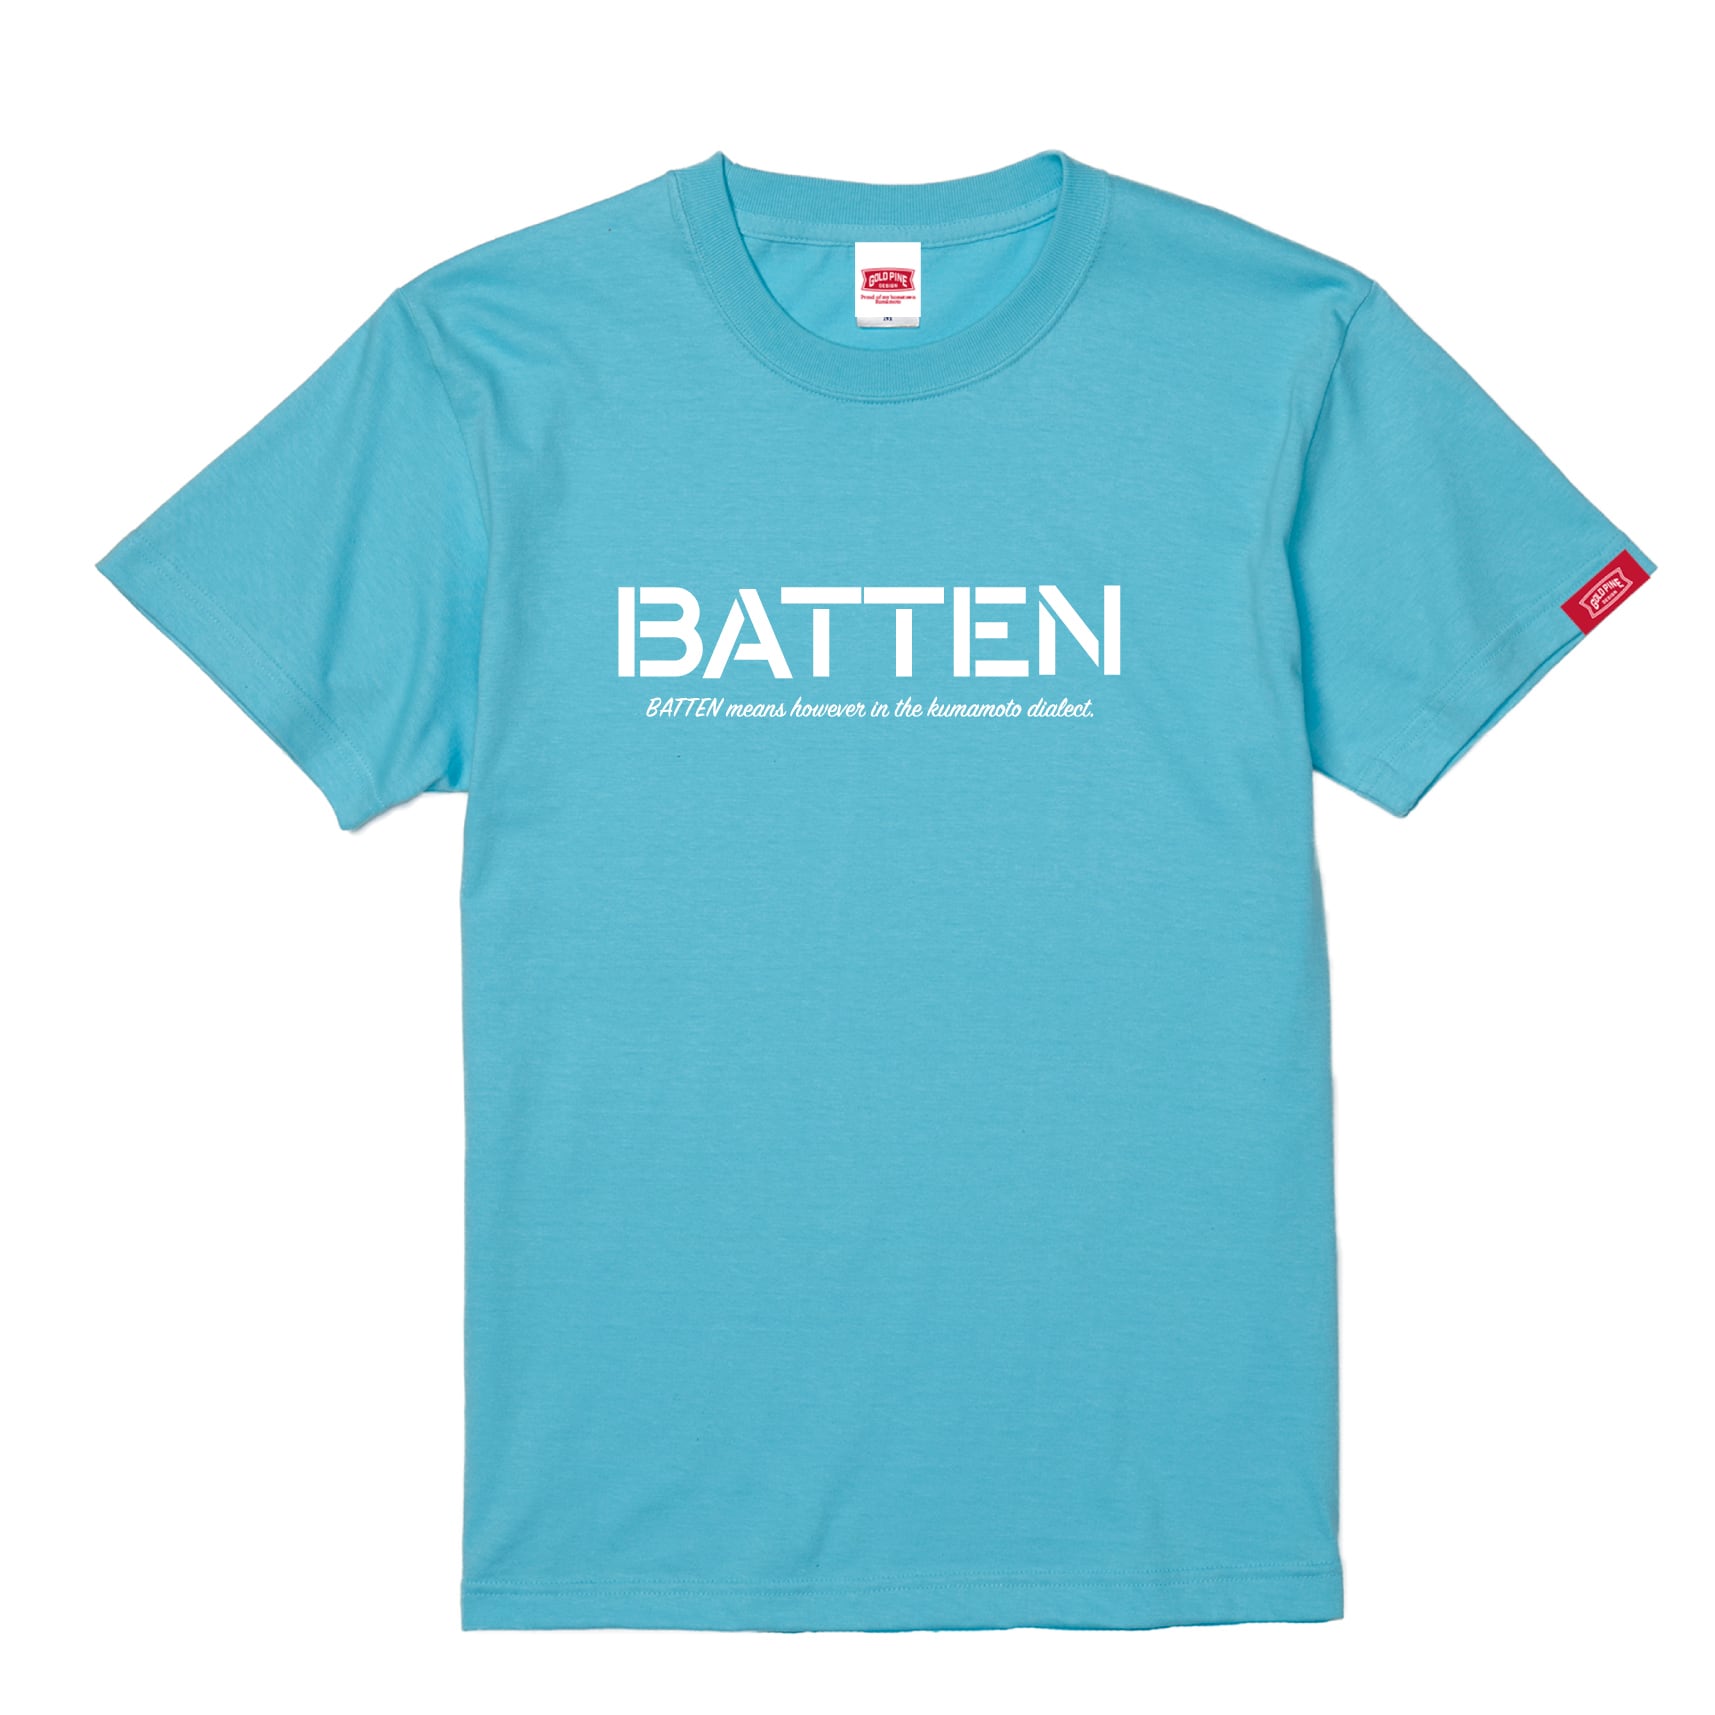 BATTEN-Tshirt【Adult】AquaBlue